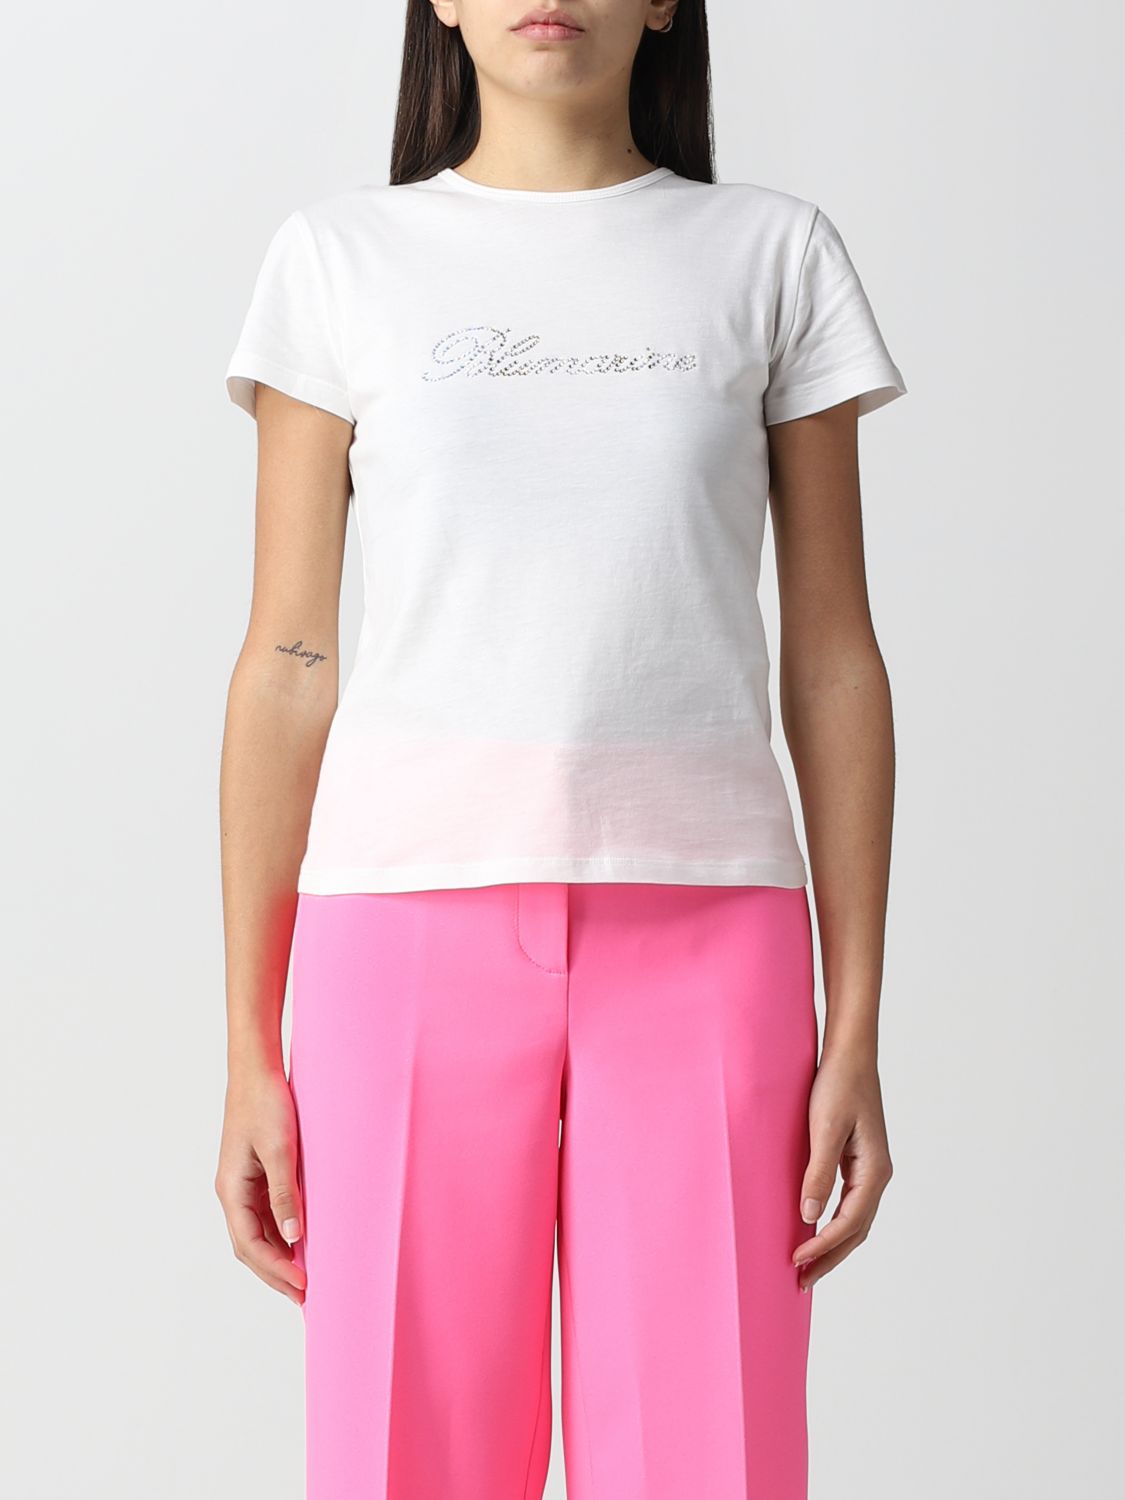 Blumarine Outlet: T-shirt women - White | Blumarine t-shirt 2T013A ...